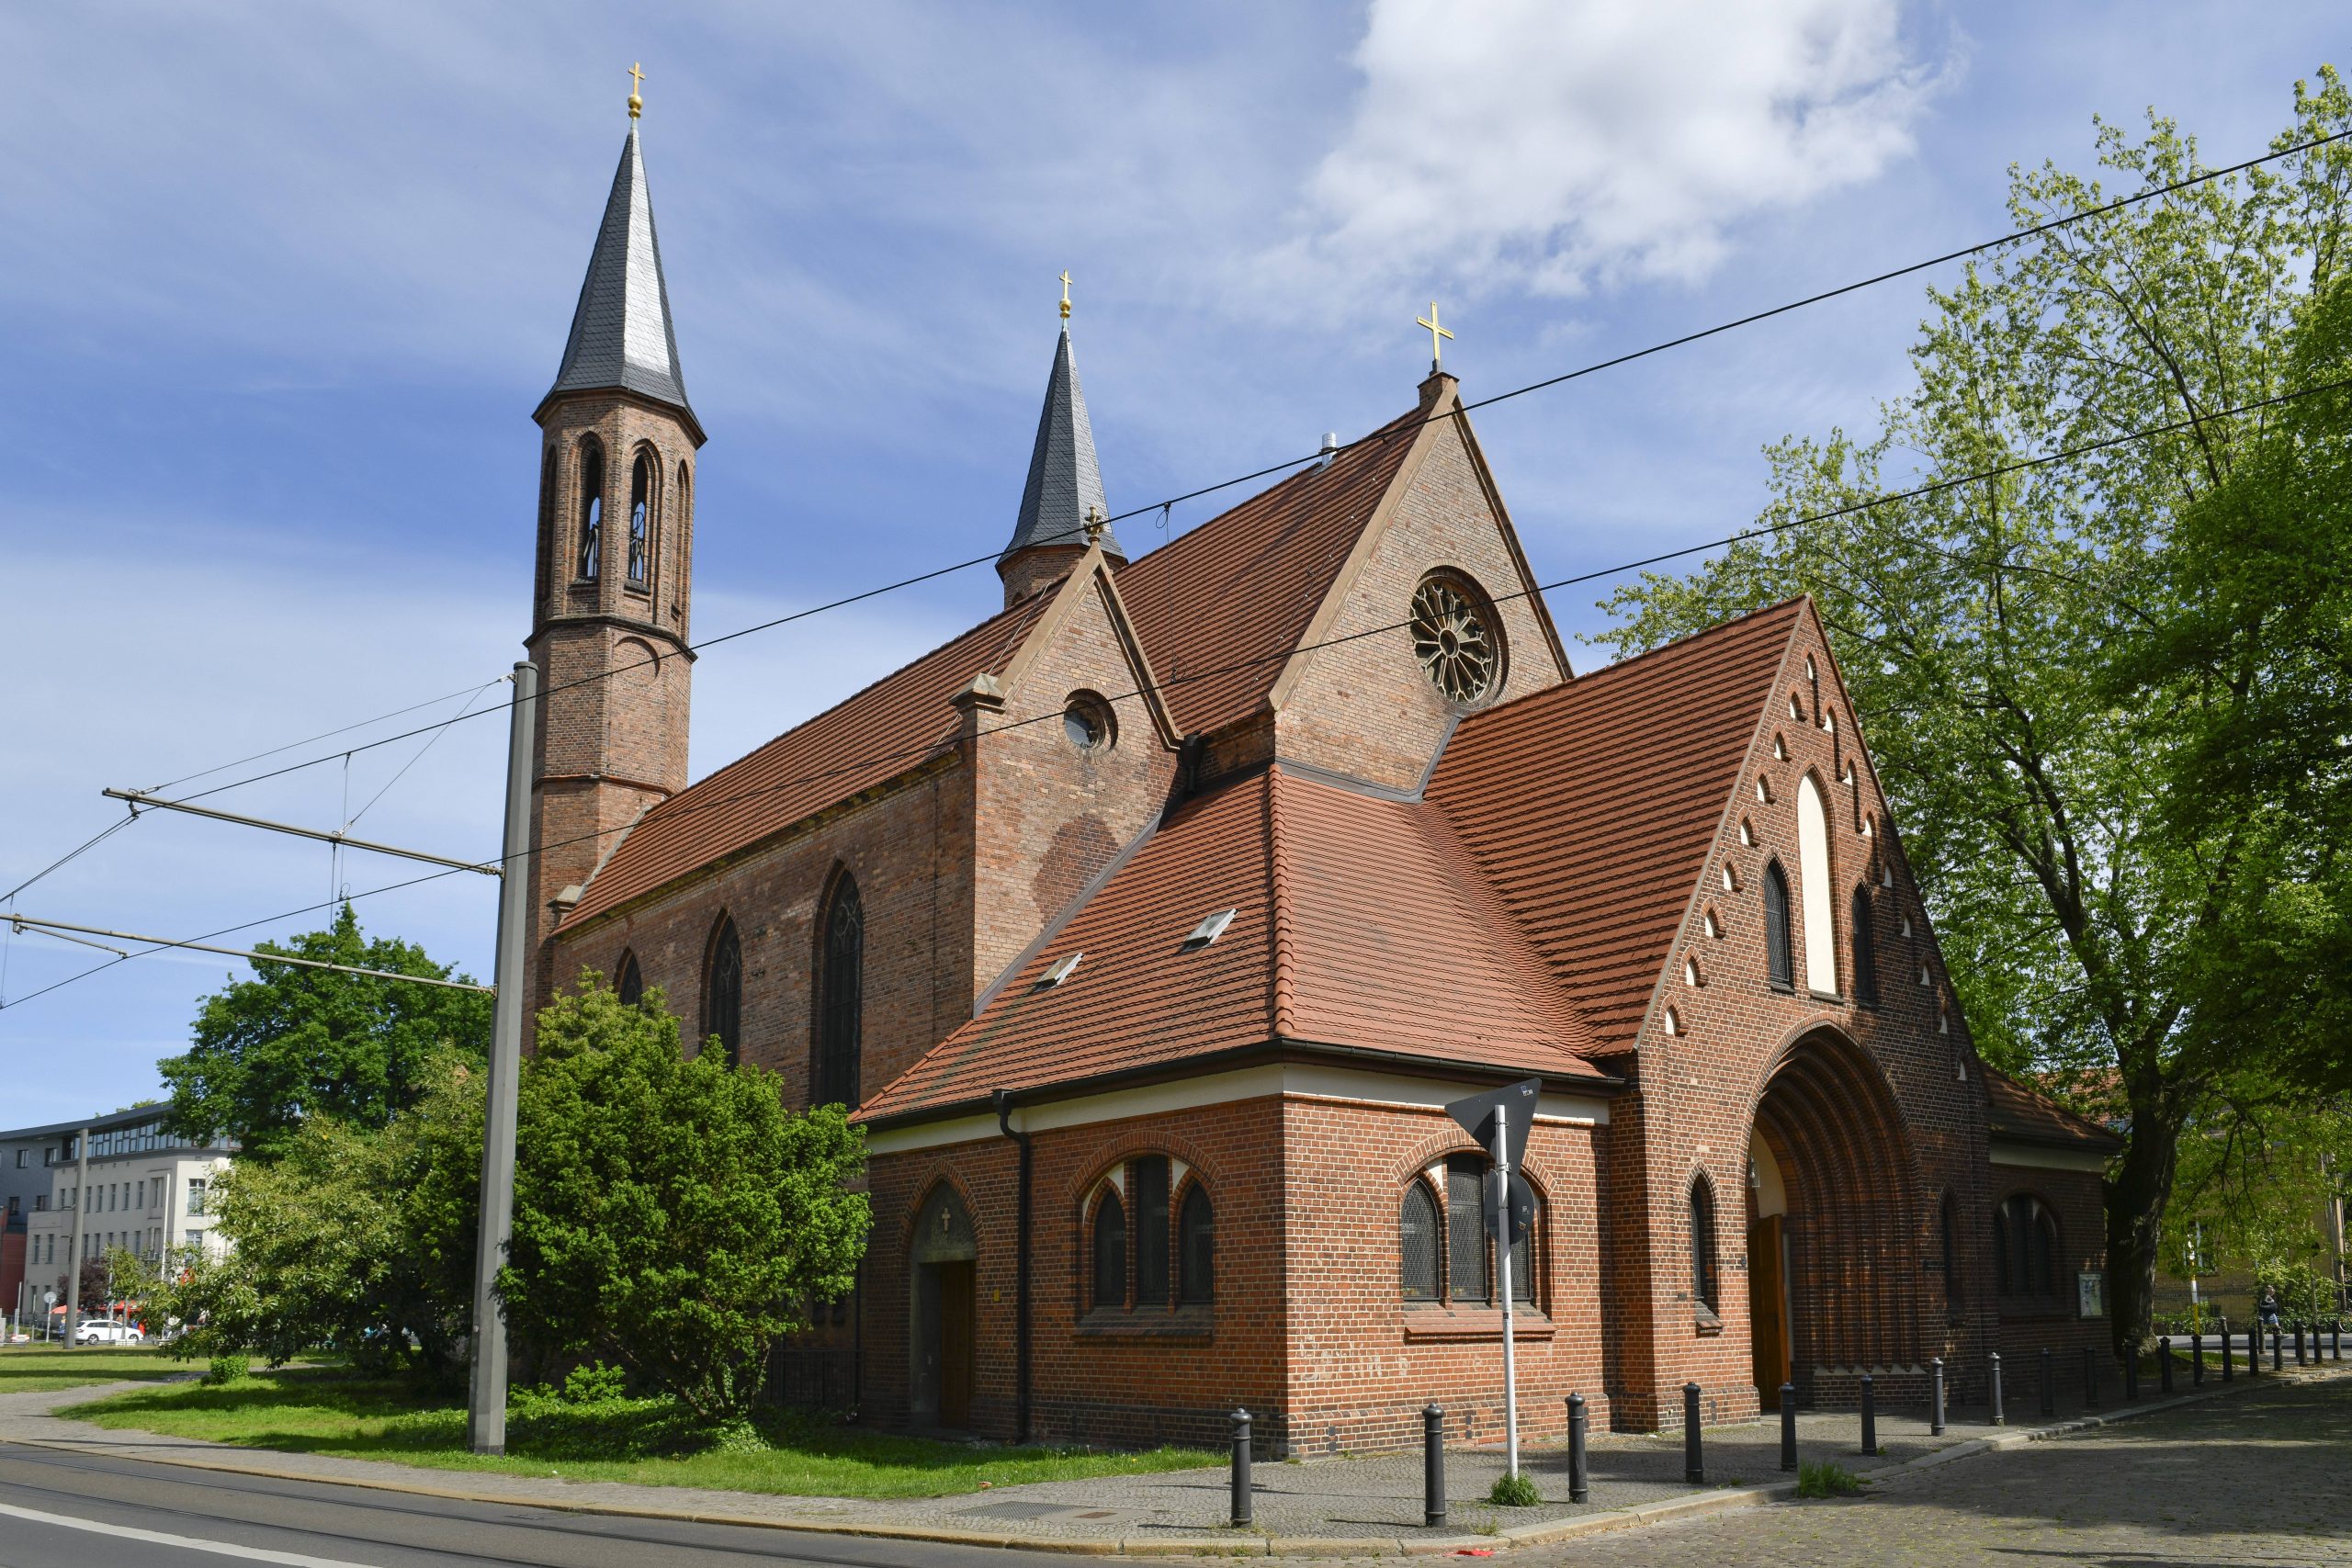 Alte Pfarrkirche Zu den Vier Evangelisten in Pankow.